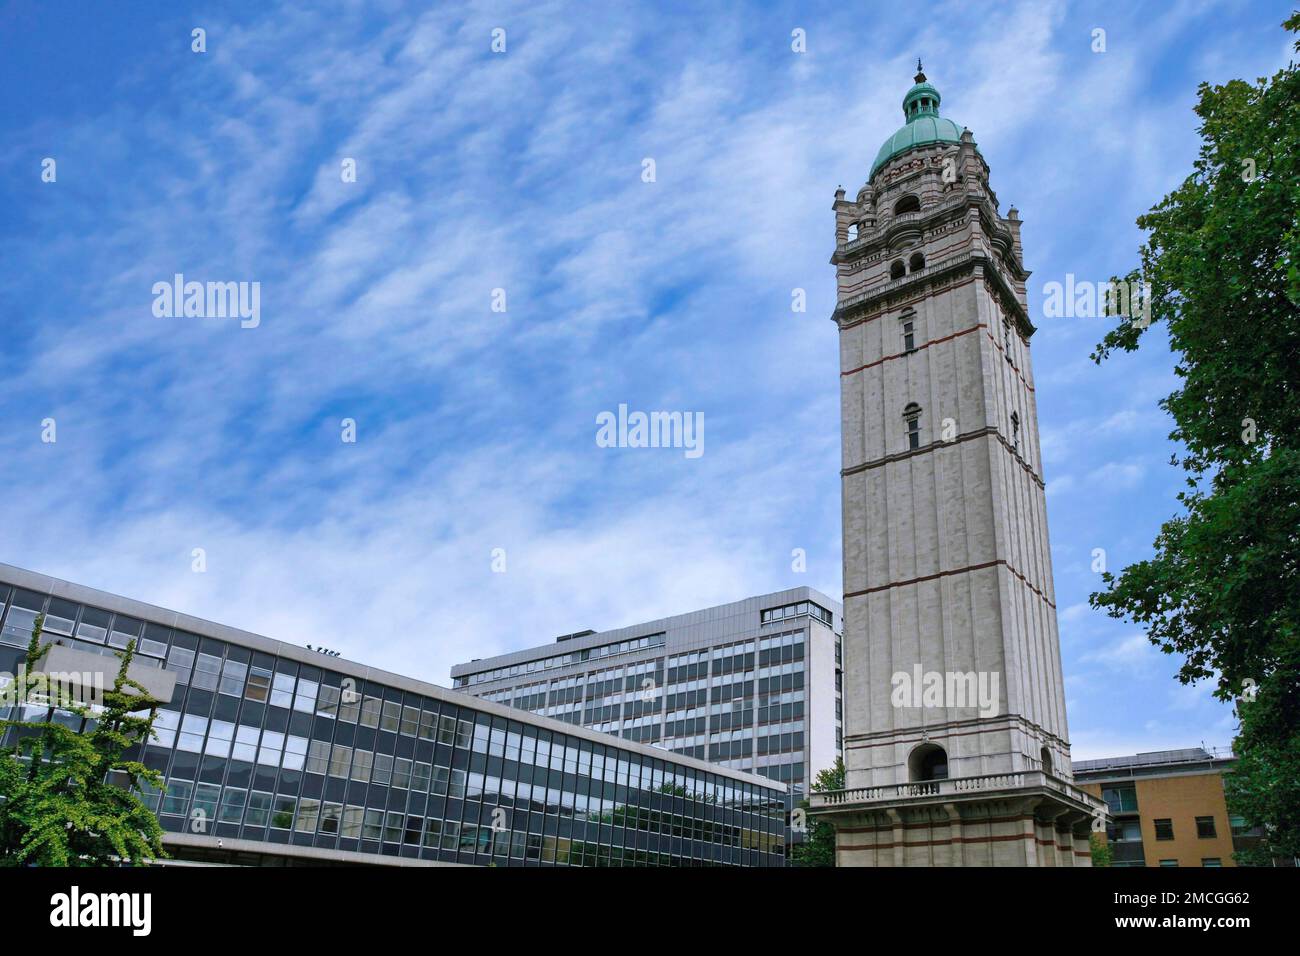 Londra, Inghilterra - Luglio 2009: Imperial College of Science, una delle più importanti università tecnologiche, cortile centrale con la Queen's Tower, risalente al 1899 Foto Stock